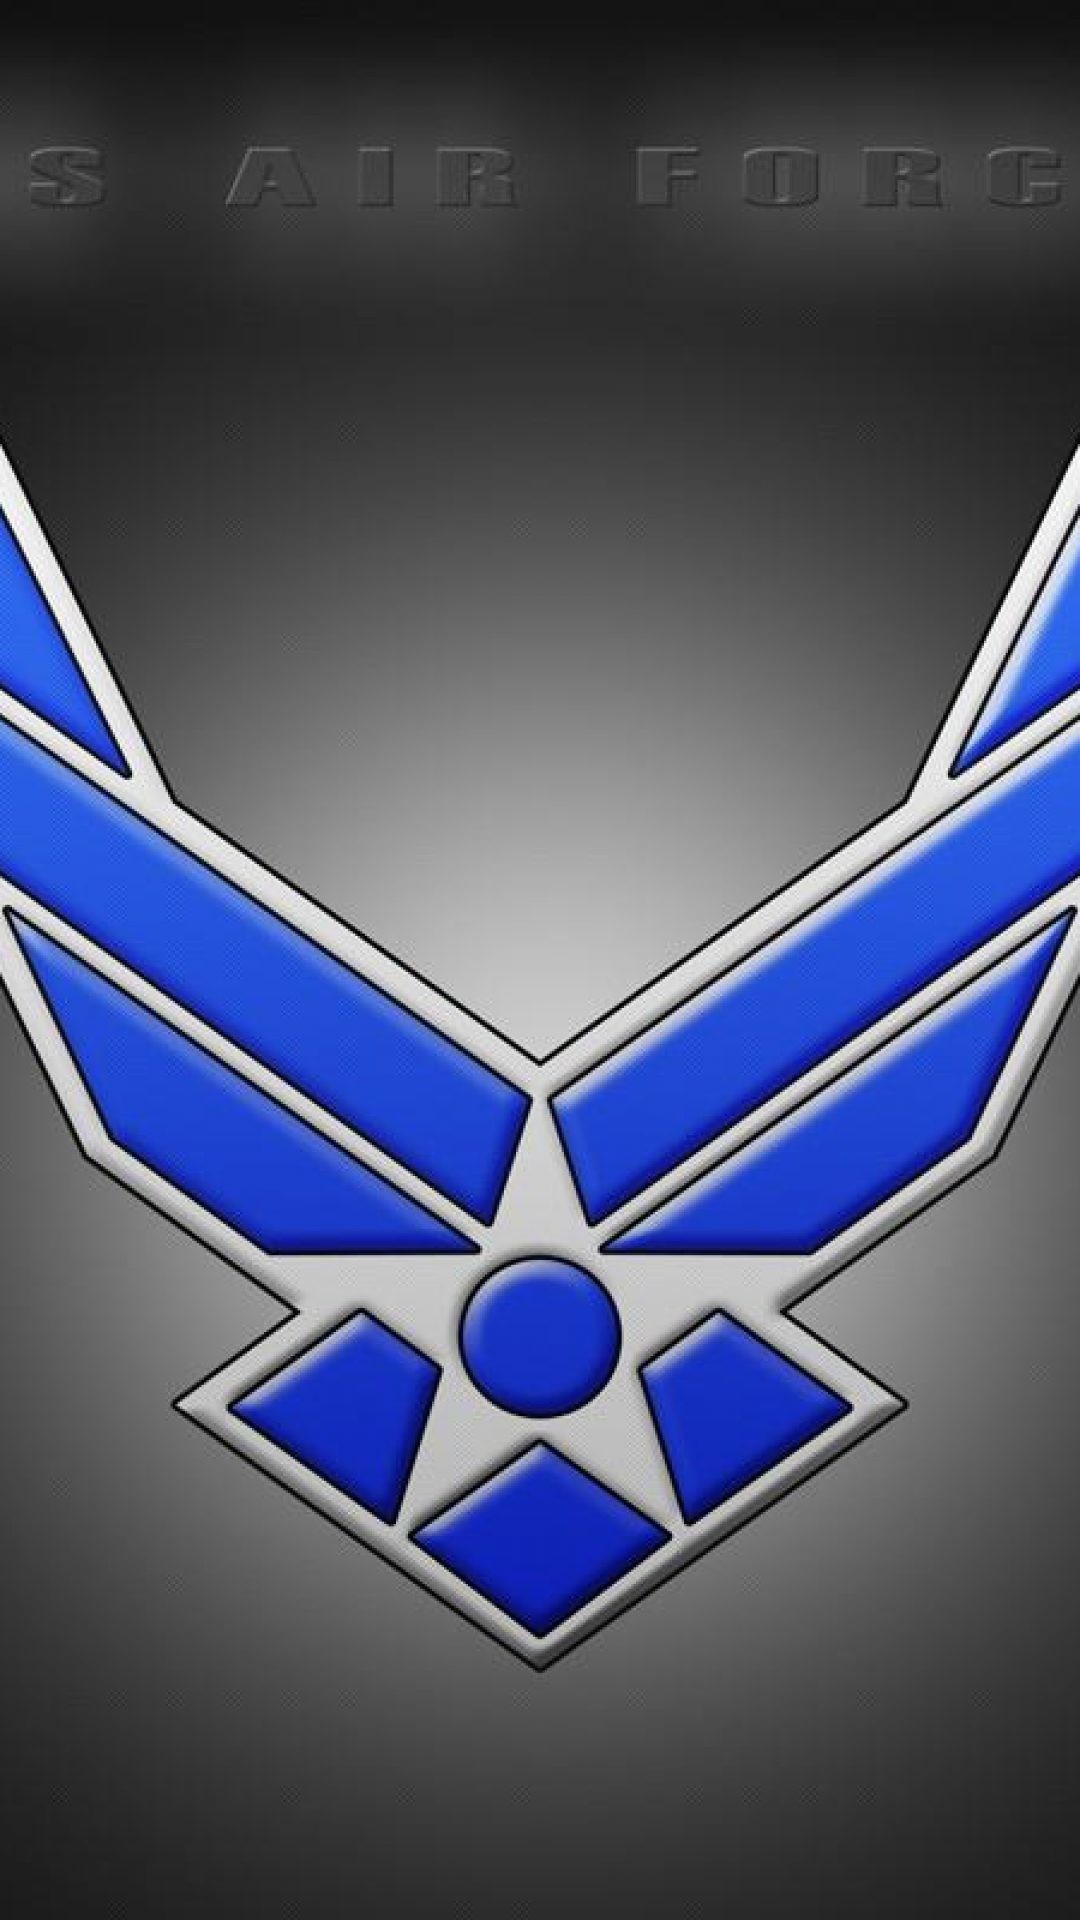 인도 공군 로고 hd 벽지,푸른,상징,강청색,상징,제도법